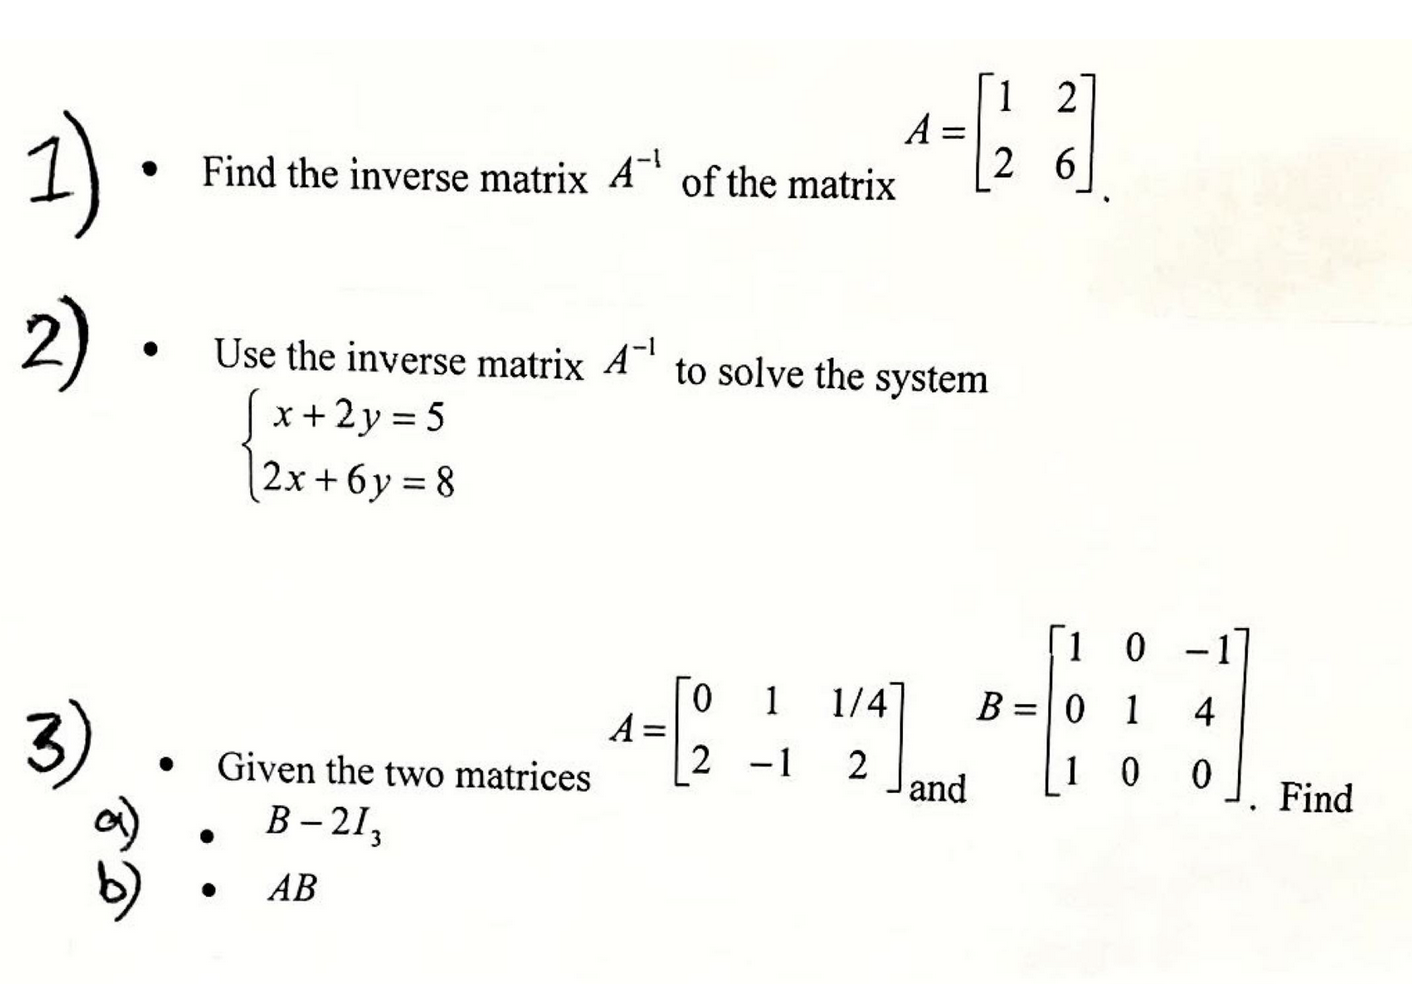 inverse matrix